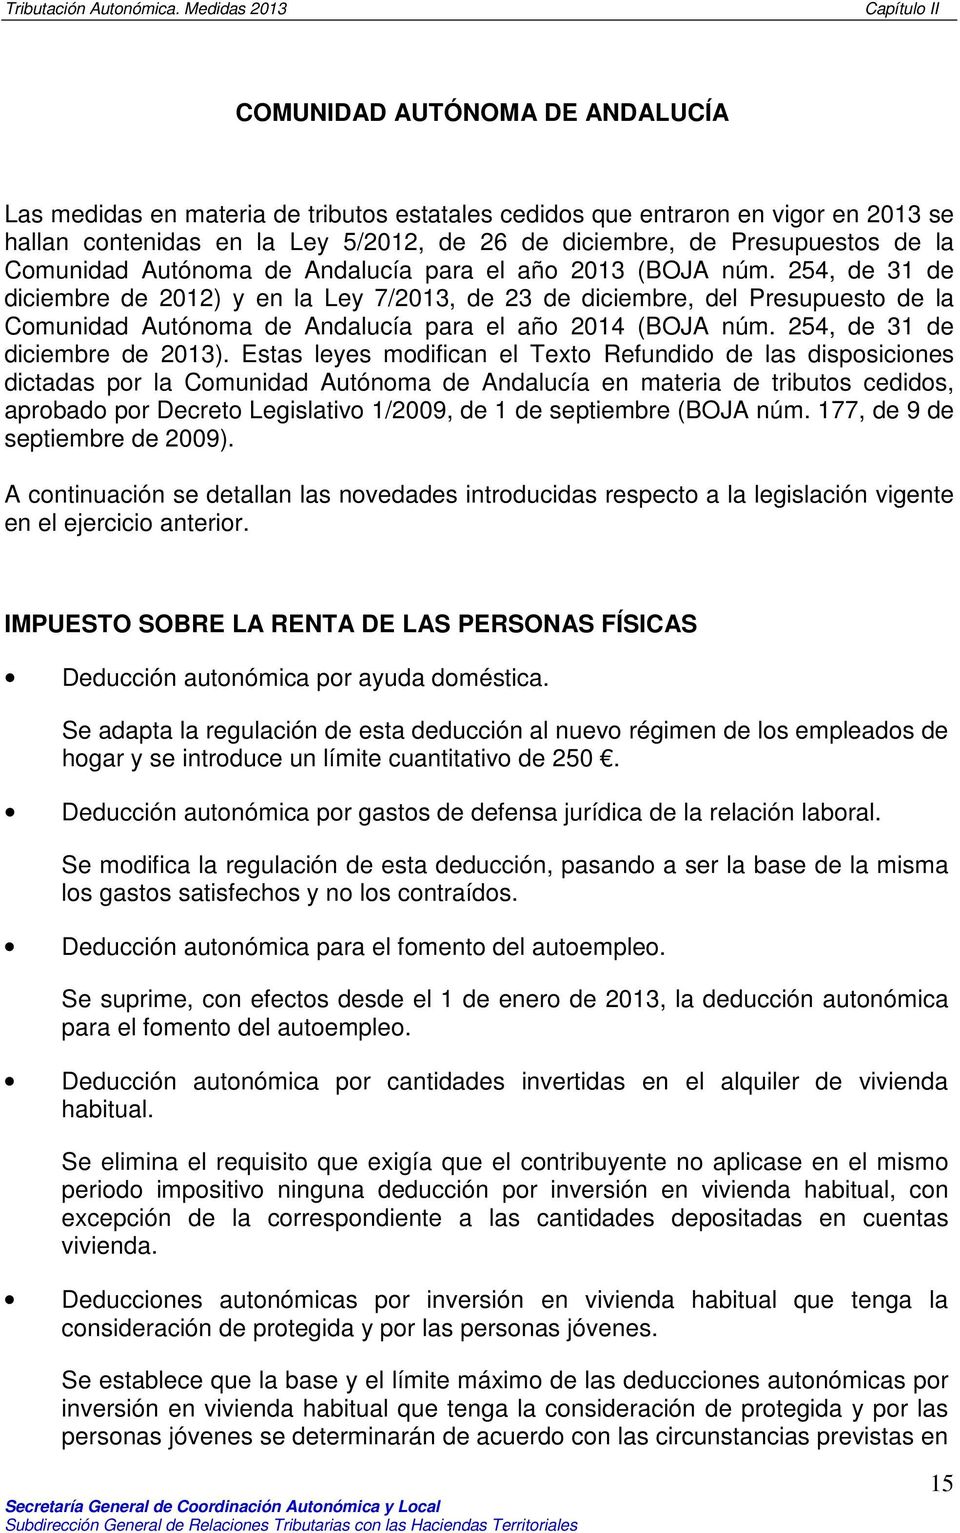 254, de 31 de diciembre de 2012) y en la Ley 7/2013, de 23 de diciembre, del Presupuesto de la Comunidad Autónoma de Andalucía para el año 2014 (BOJA núm. 254, de 31 de diciembre de 2013).